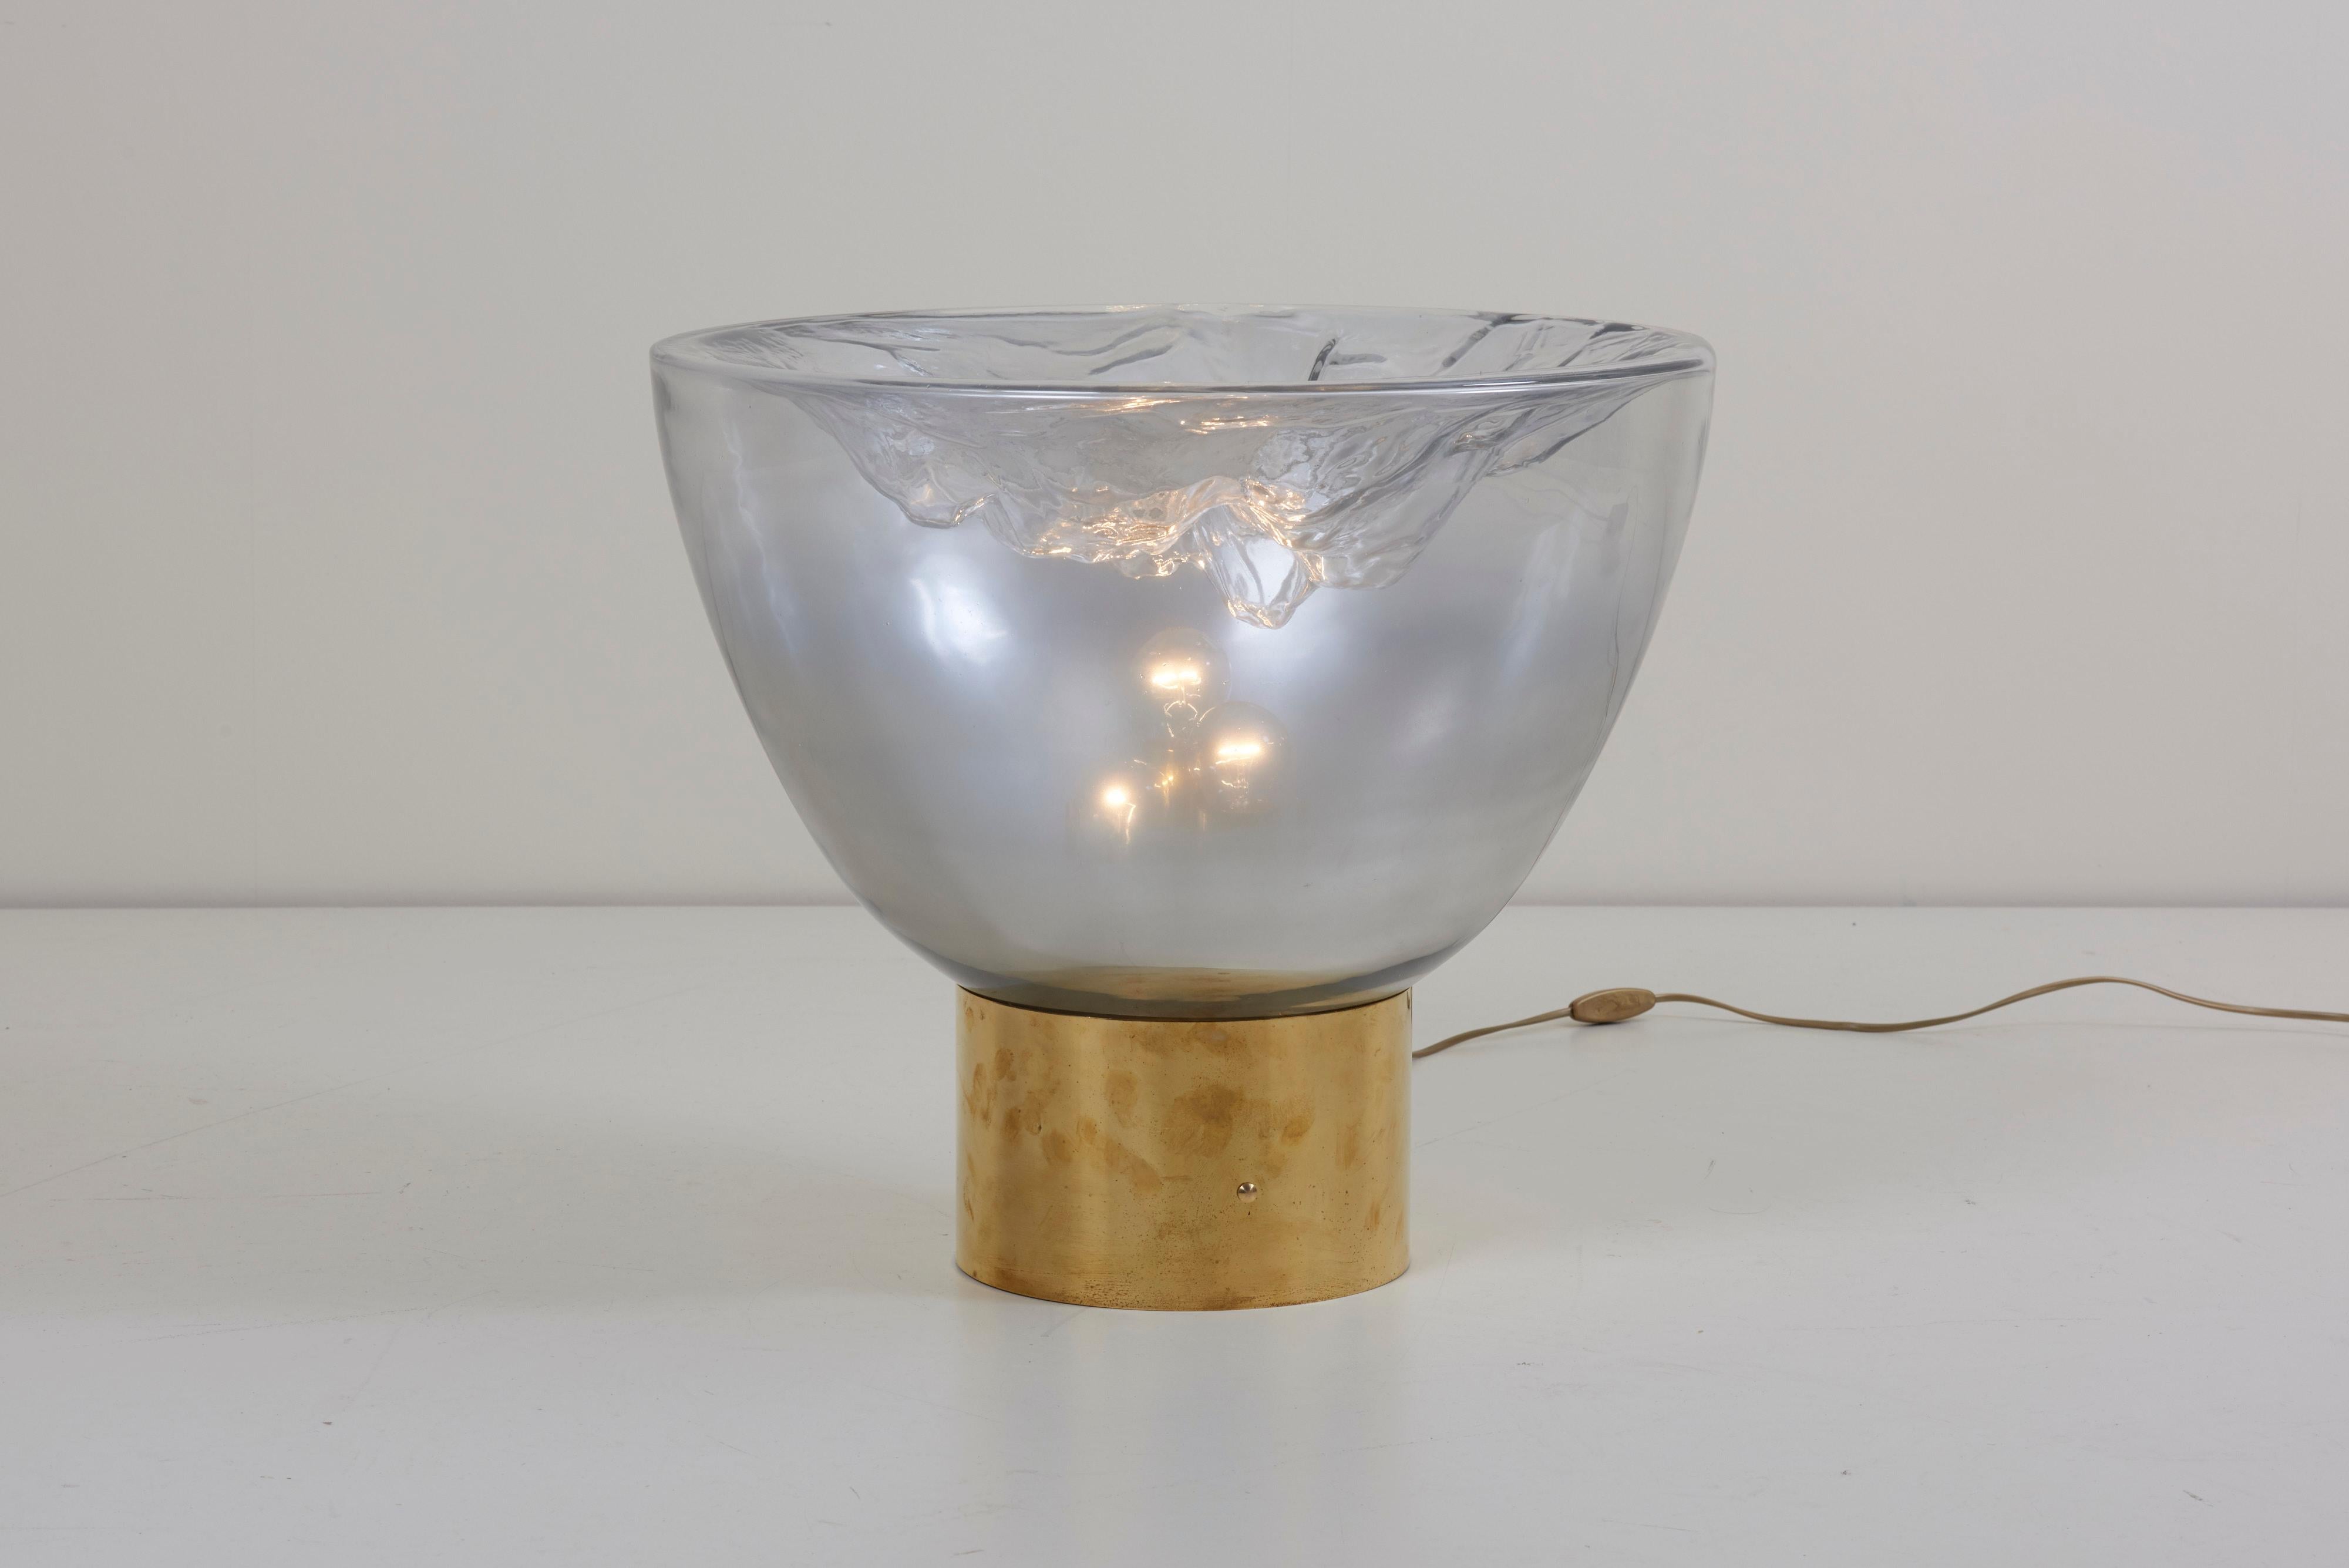 Impressionnante paire de lampes de table en verre de Murano avec une base en laiton. 
Pour plus de sécurité, la lampe doit être contrôlée localement par un spécialiste en fonction des exigences locales.